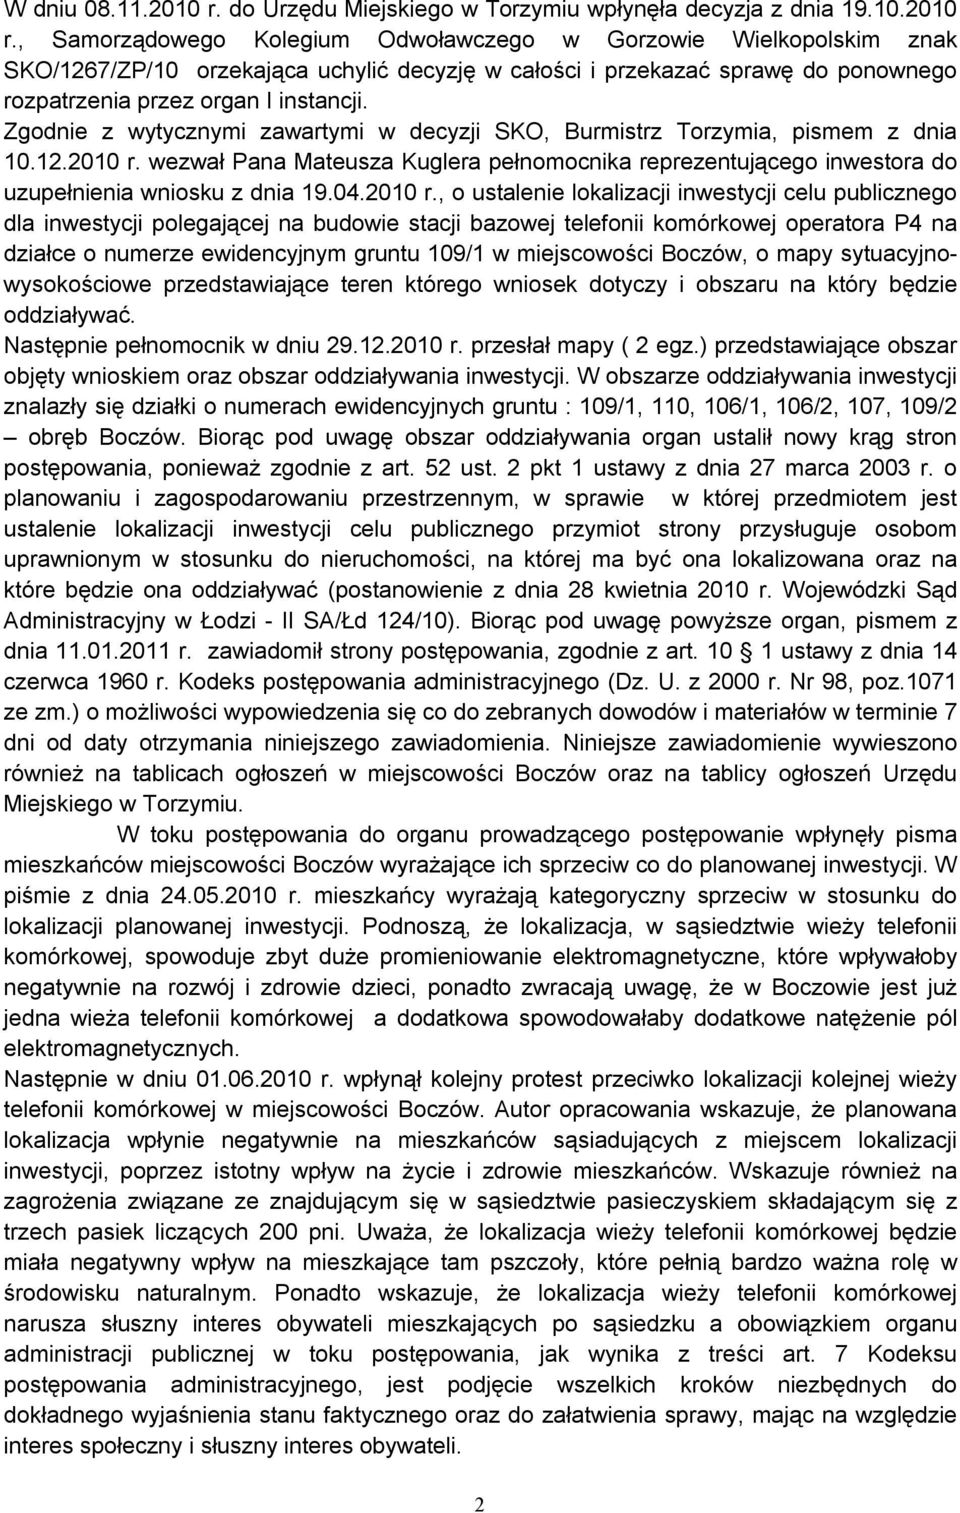 , Samorządowego Kolegium Odwoławczego w Gorzowie Wielkopolskim znak SKO/1267/ZP/10 orzekająca uchylić decyzję w całości i przekazać sprawę do ponownego rozpatrzenia przez organ I instancji.